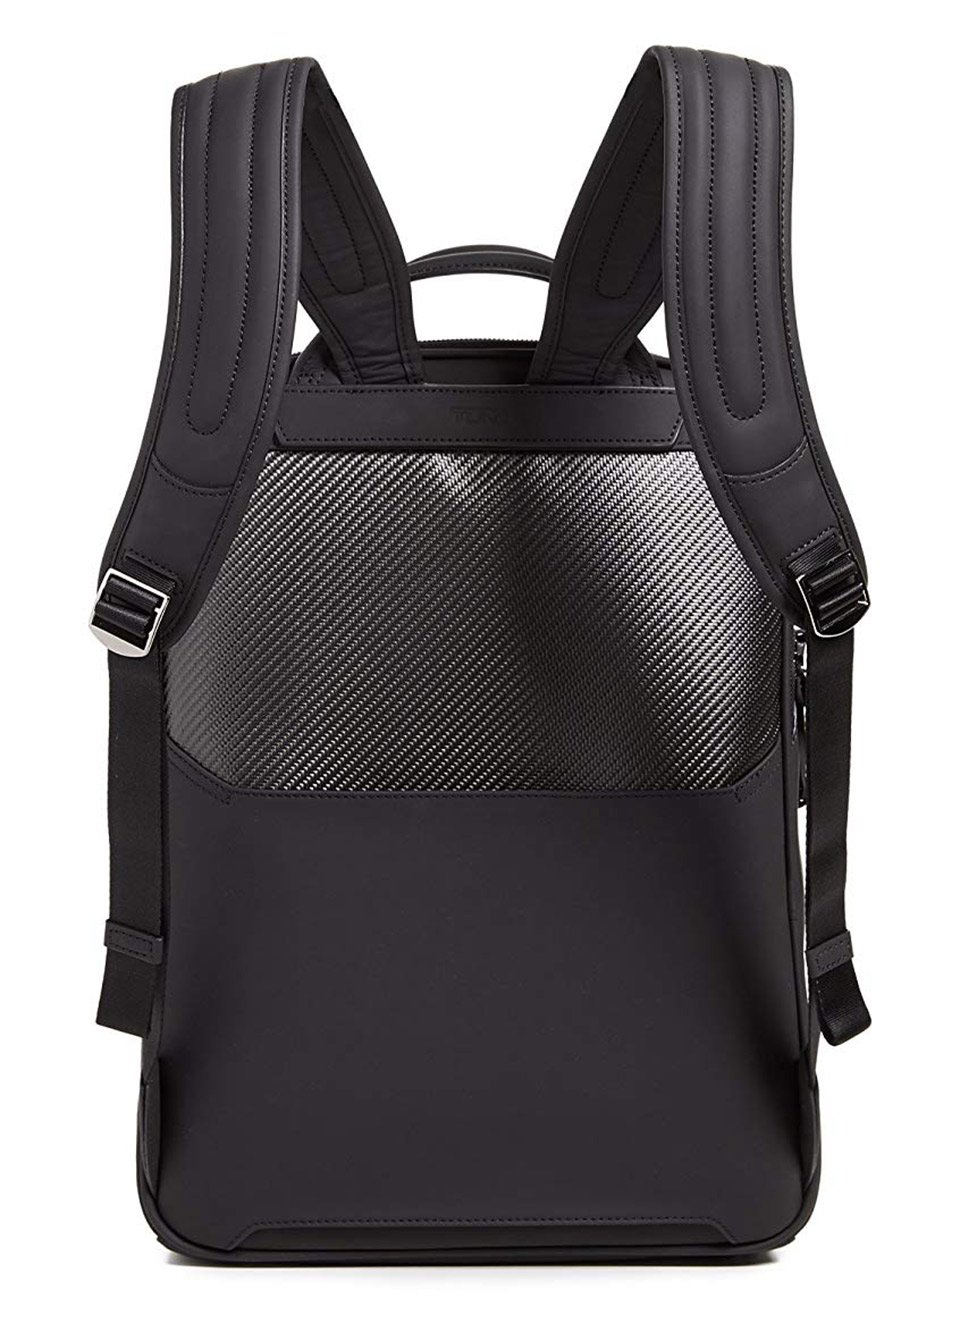 Tumi CFX Carbon Fiber Backpack